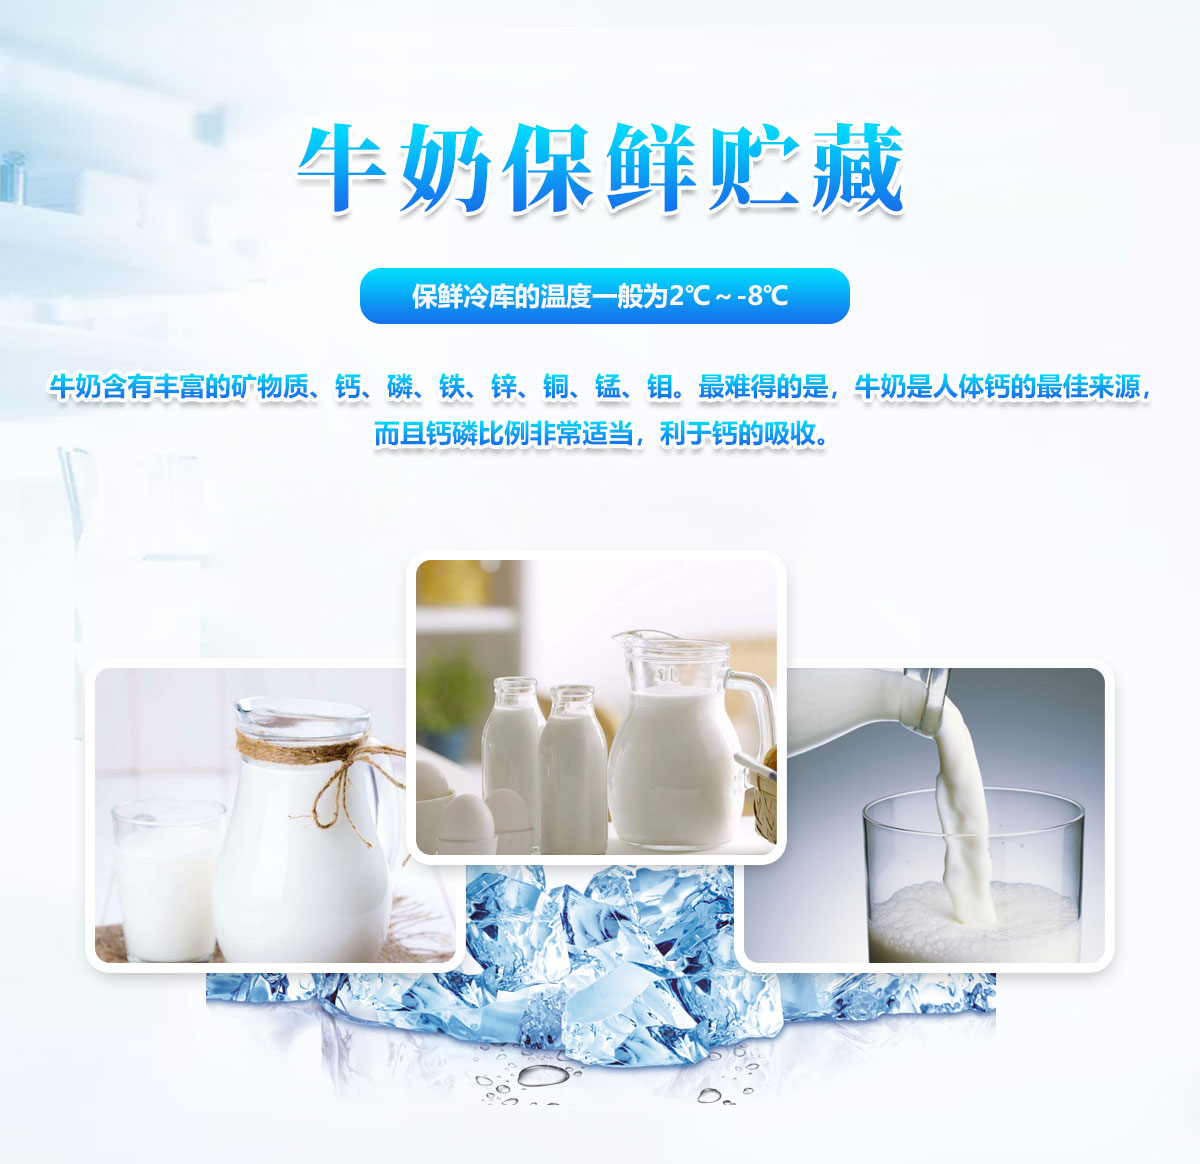    牛奶乳品冷藏保鮮冷庫溫度標準